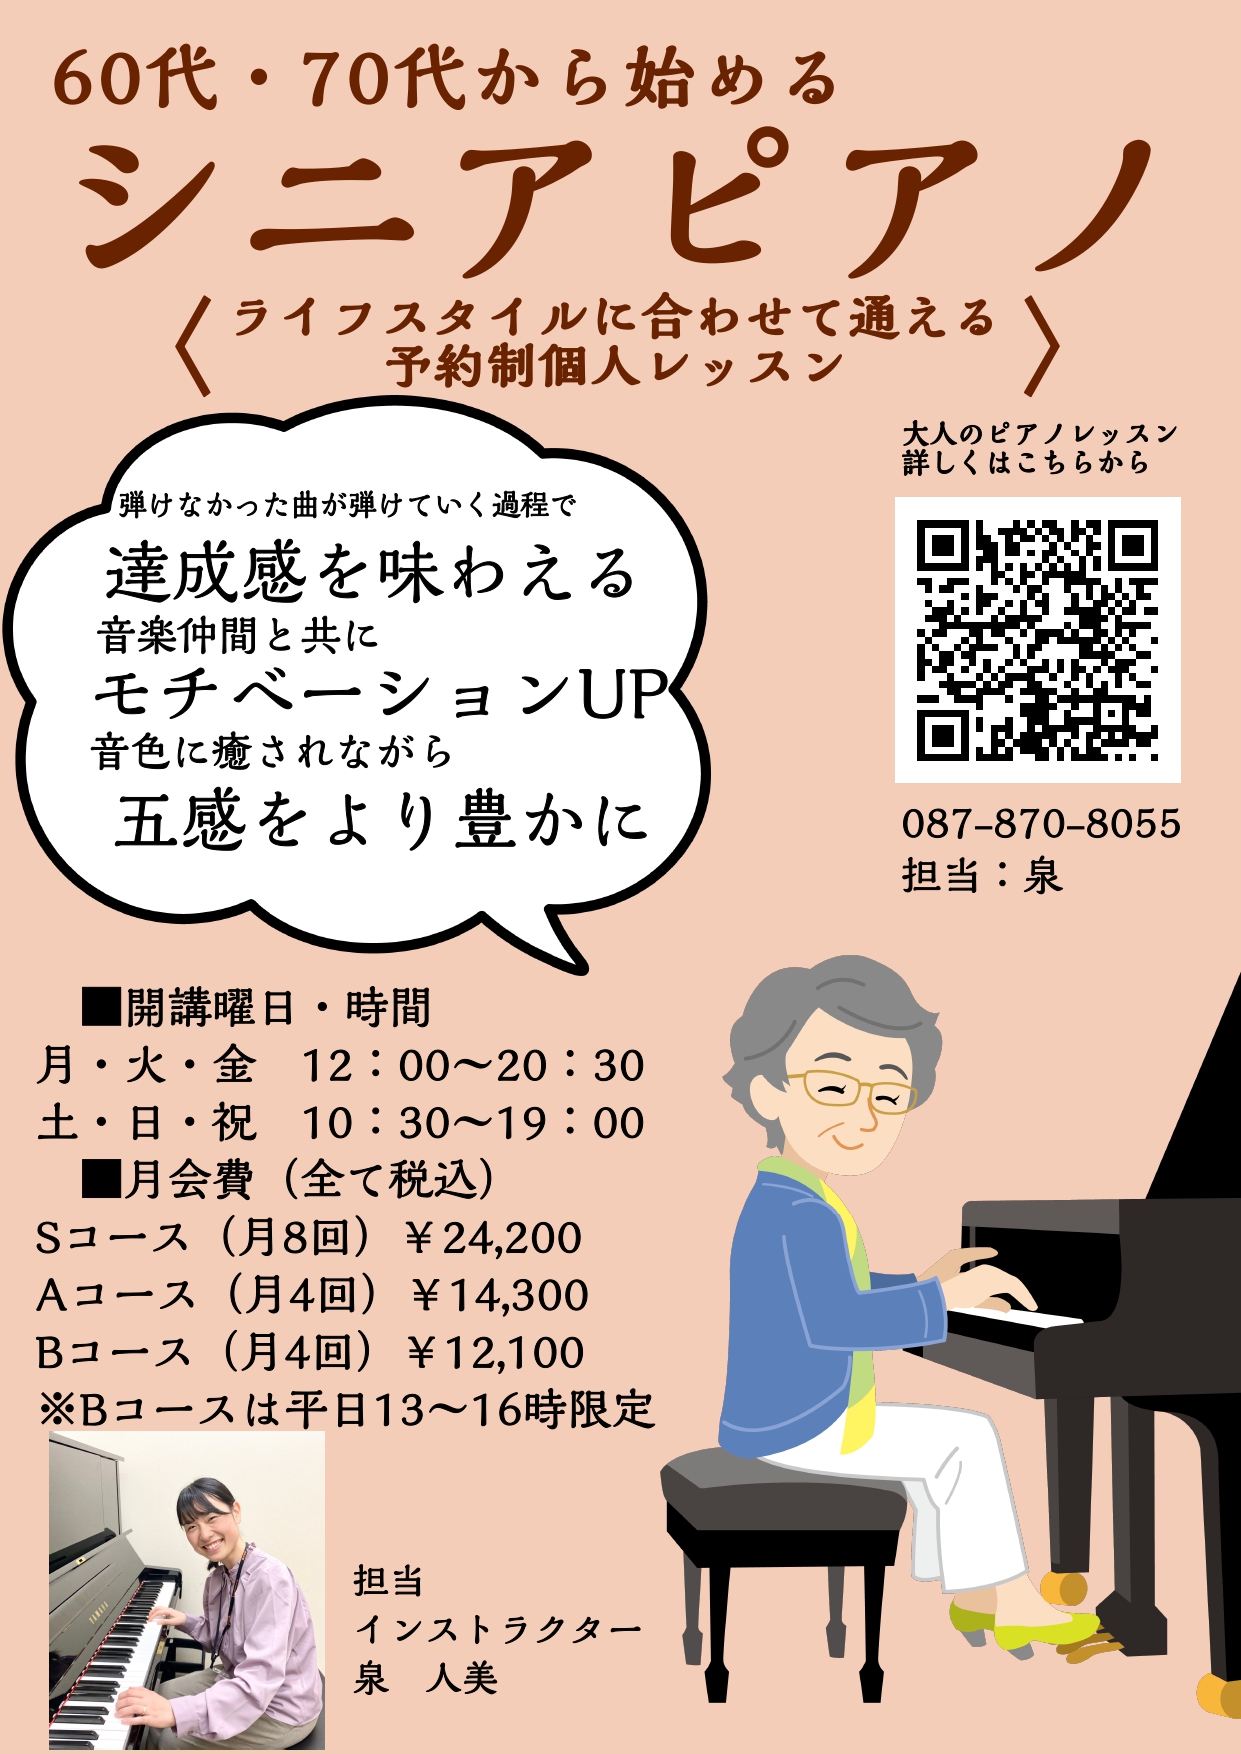 皆さんこんにちは！ピアノインストラクターの泉 人美です！本日は綾川店で人気のシニアピアノコースのご紹介です♪ CONTENTSシニアピアノではこんな事をしています♪シニア世代の方が楽器を始めるメリット！60代からでもピアノって始められるの？よくあるご質問体験レッスンスケジュール稼働日時インストラクタ […]